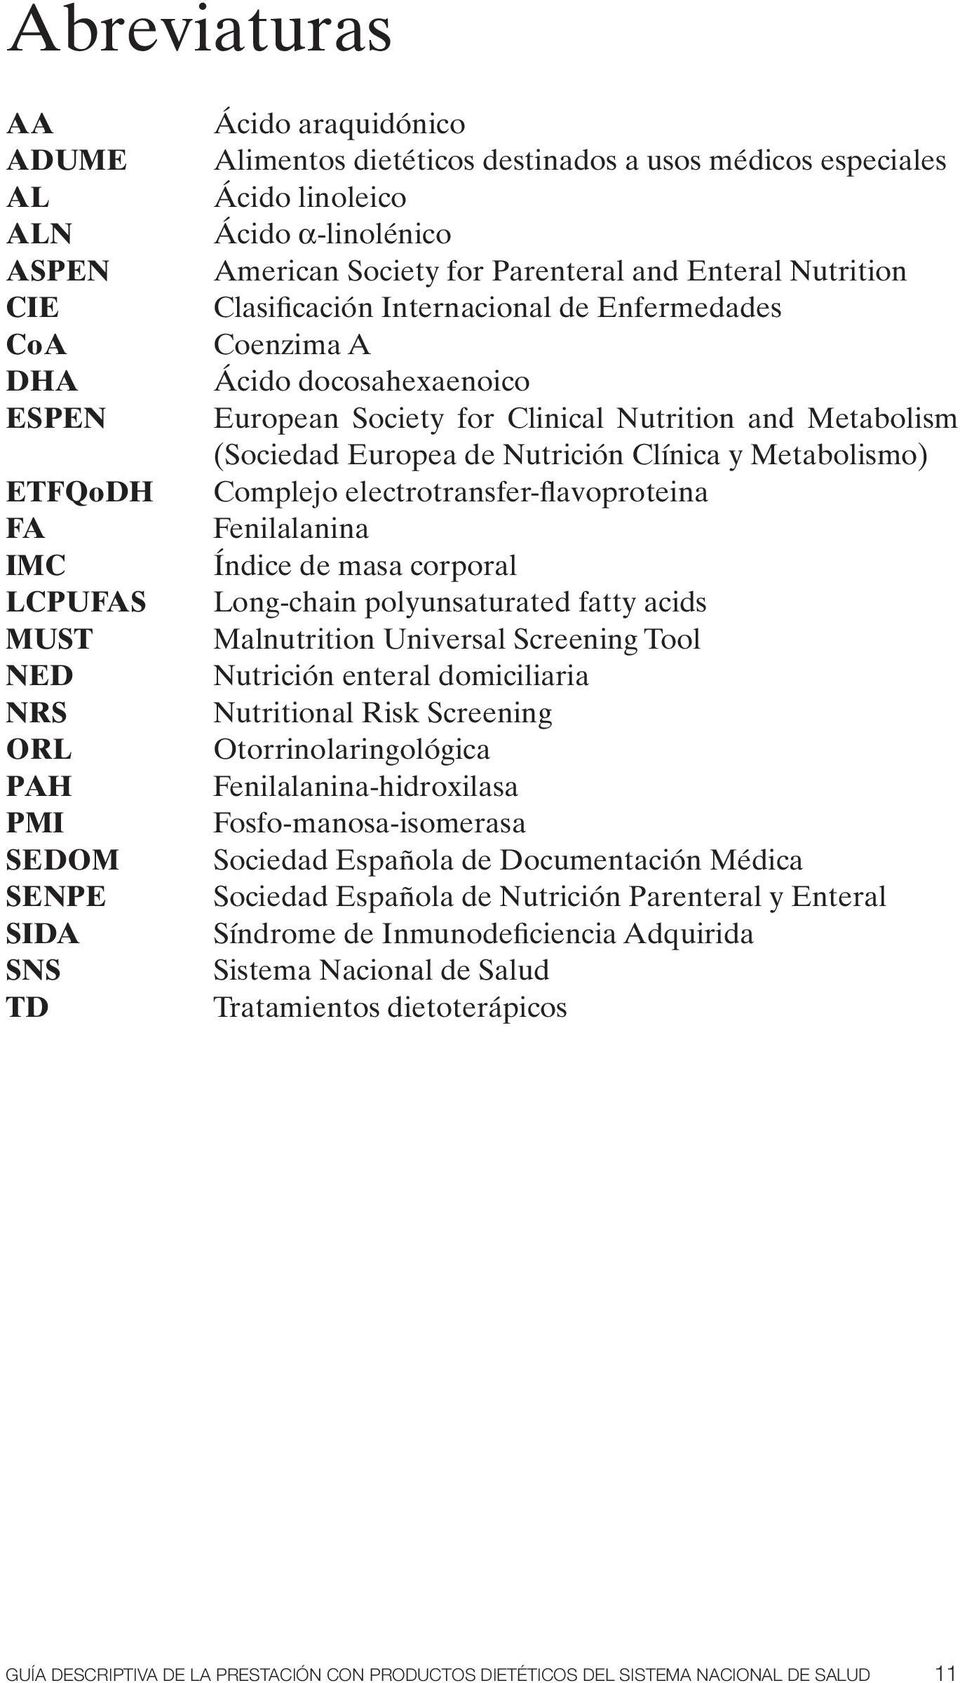 Clinical Nutrition and Metabolism (Sociedad Europea de Nutrición Clínica y Metabolismo) Complejo electrotransfer-flavoproteina Fenilalanina Índice de masa corporal Long-chain polyunsaturated fatty